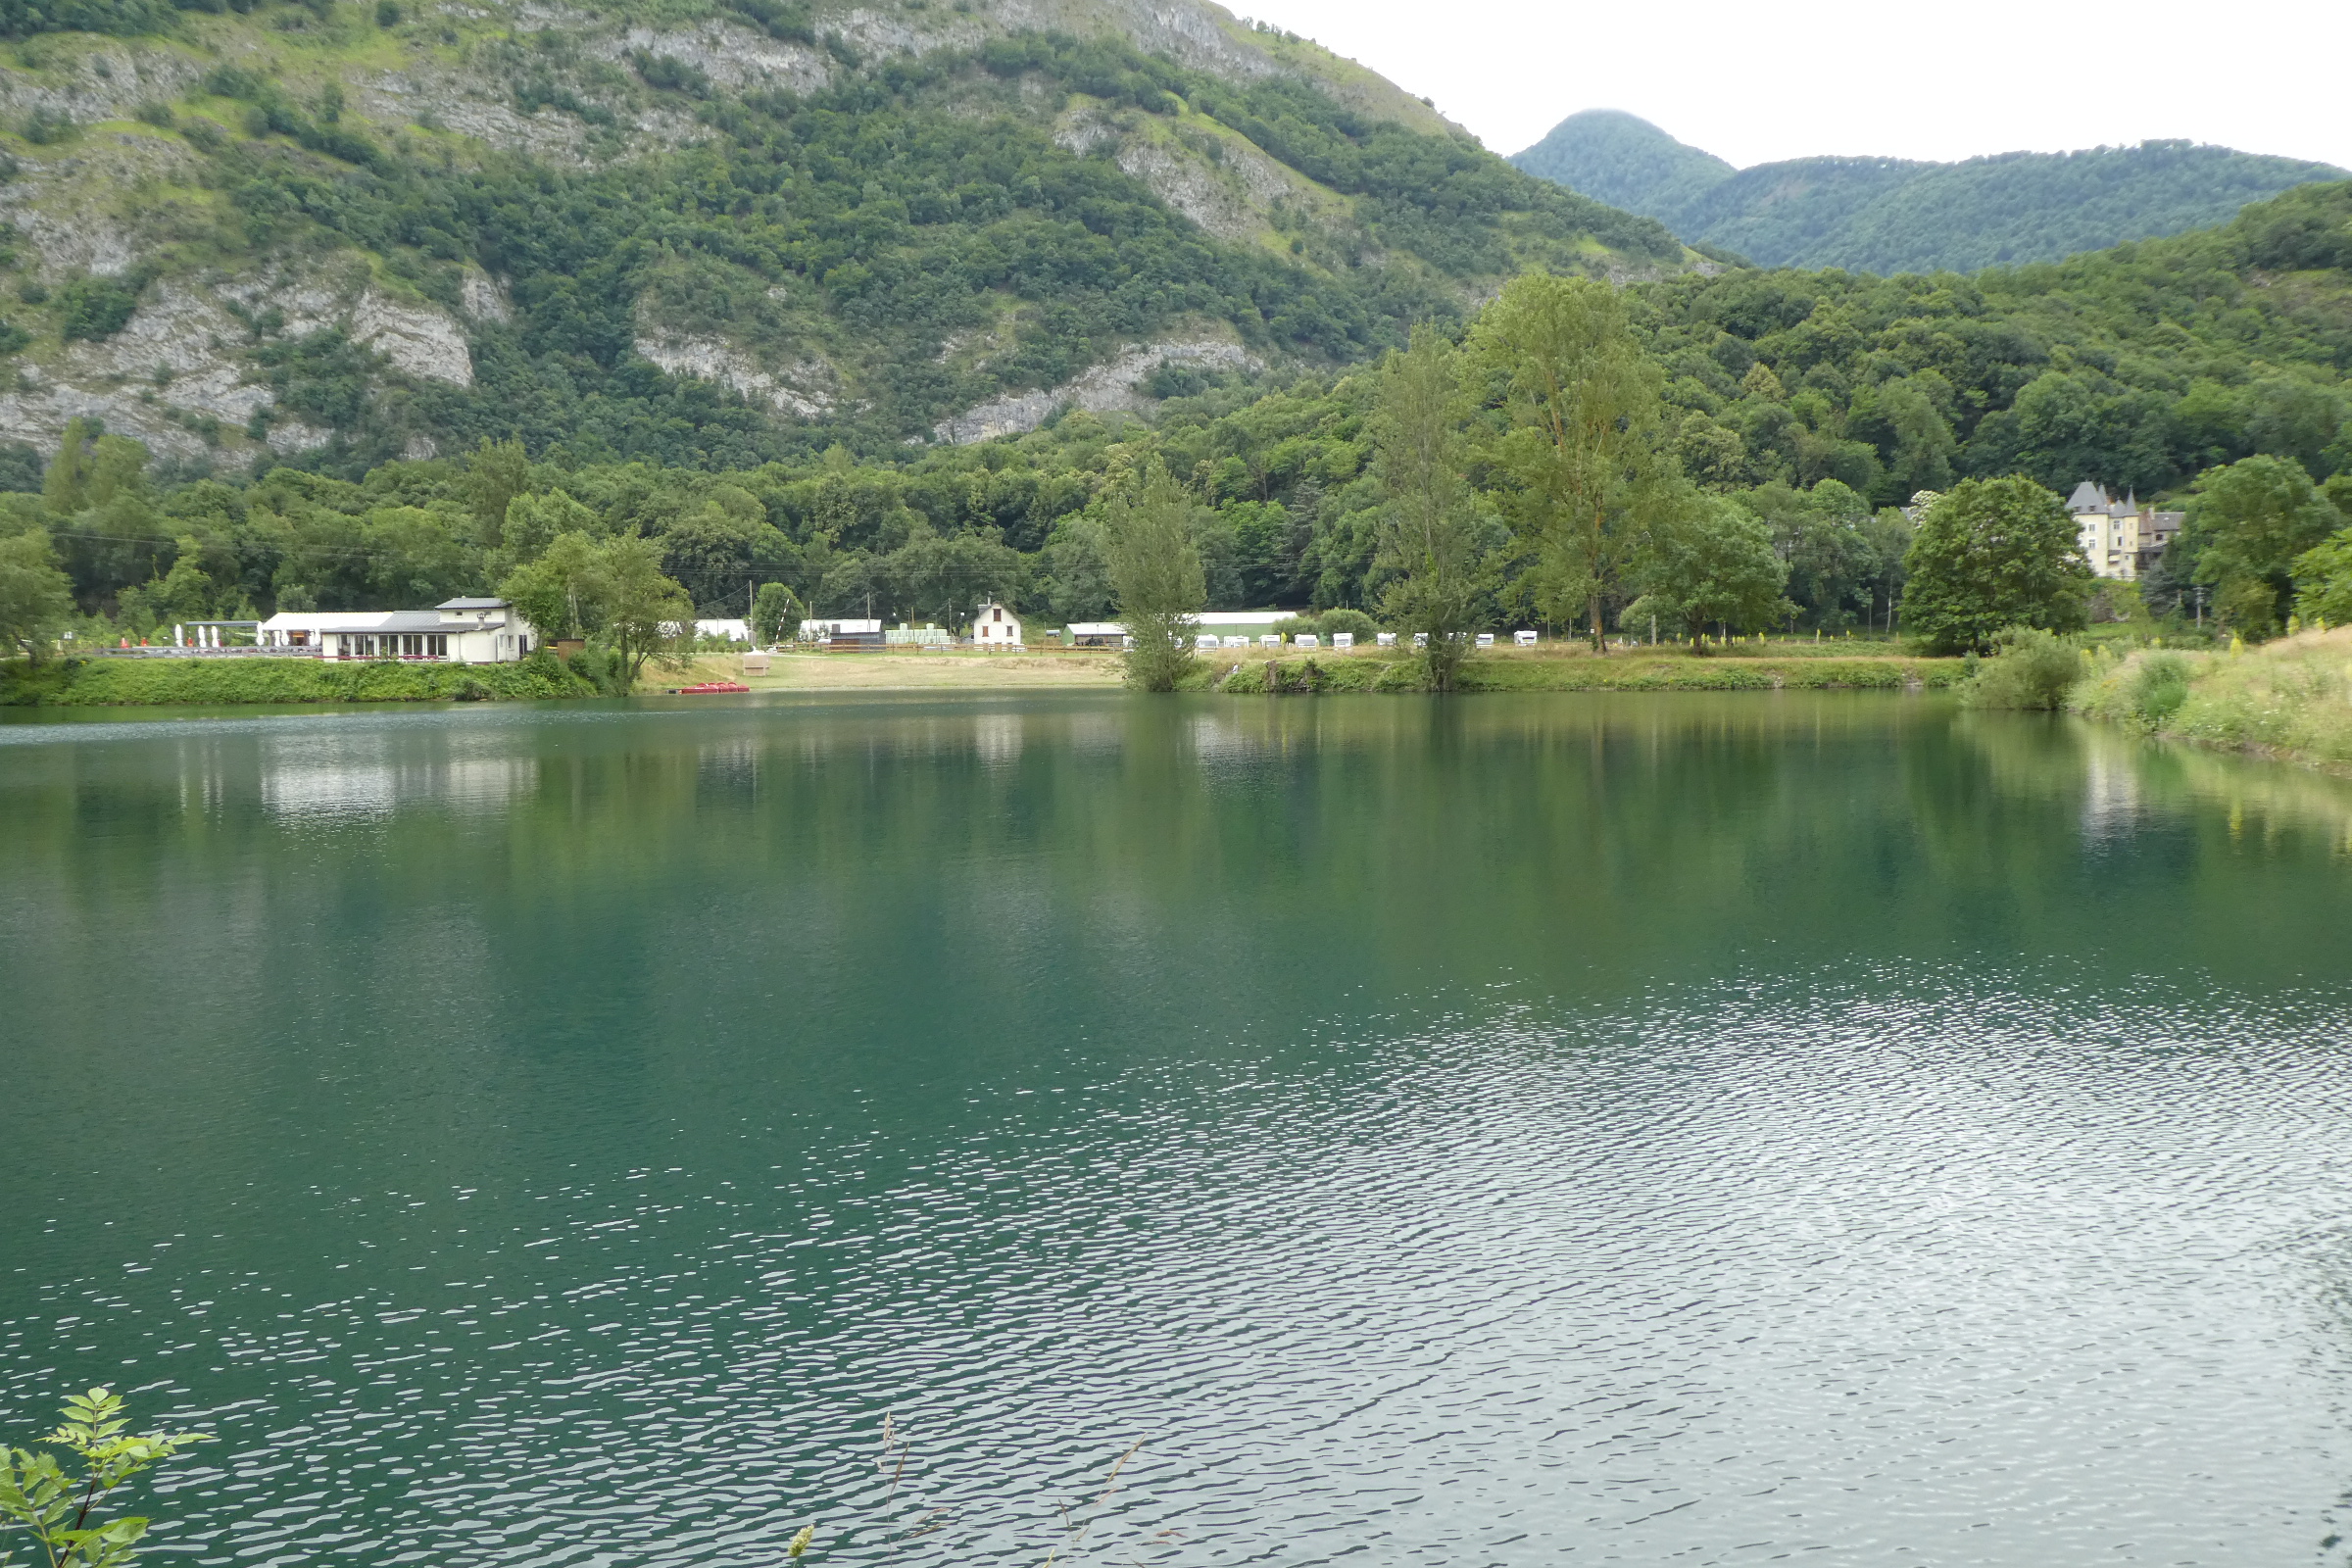  lac de Géry